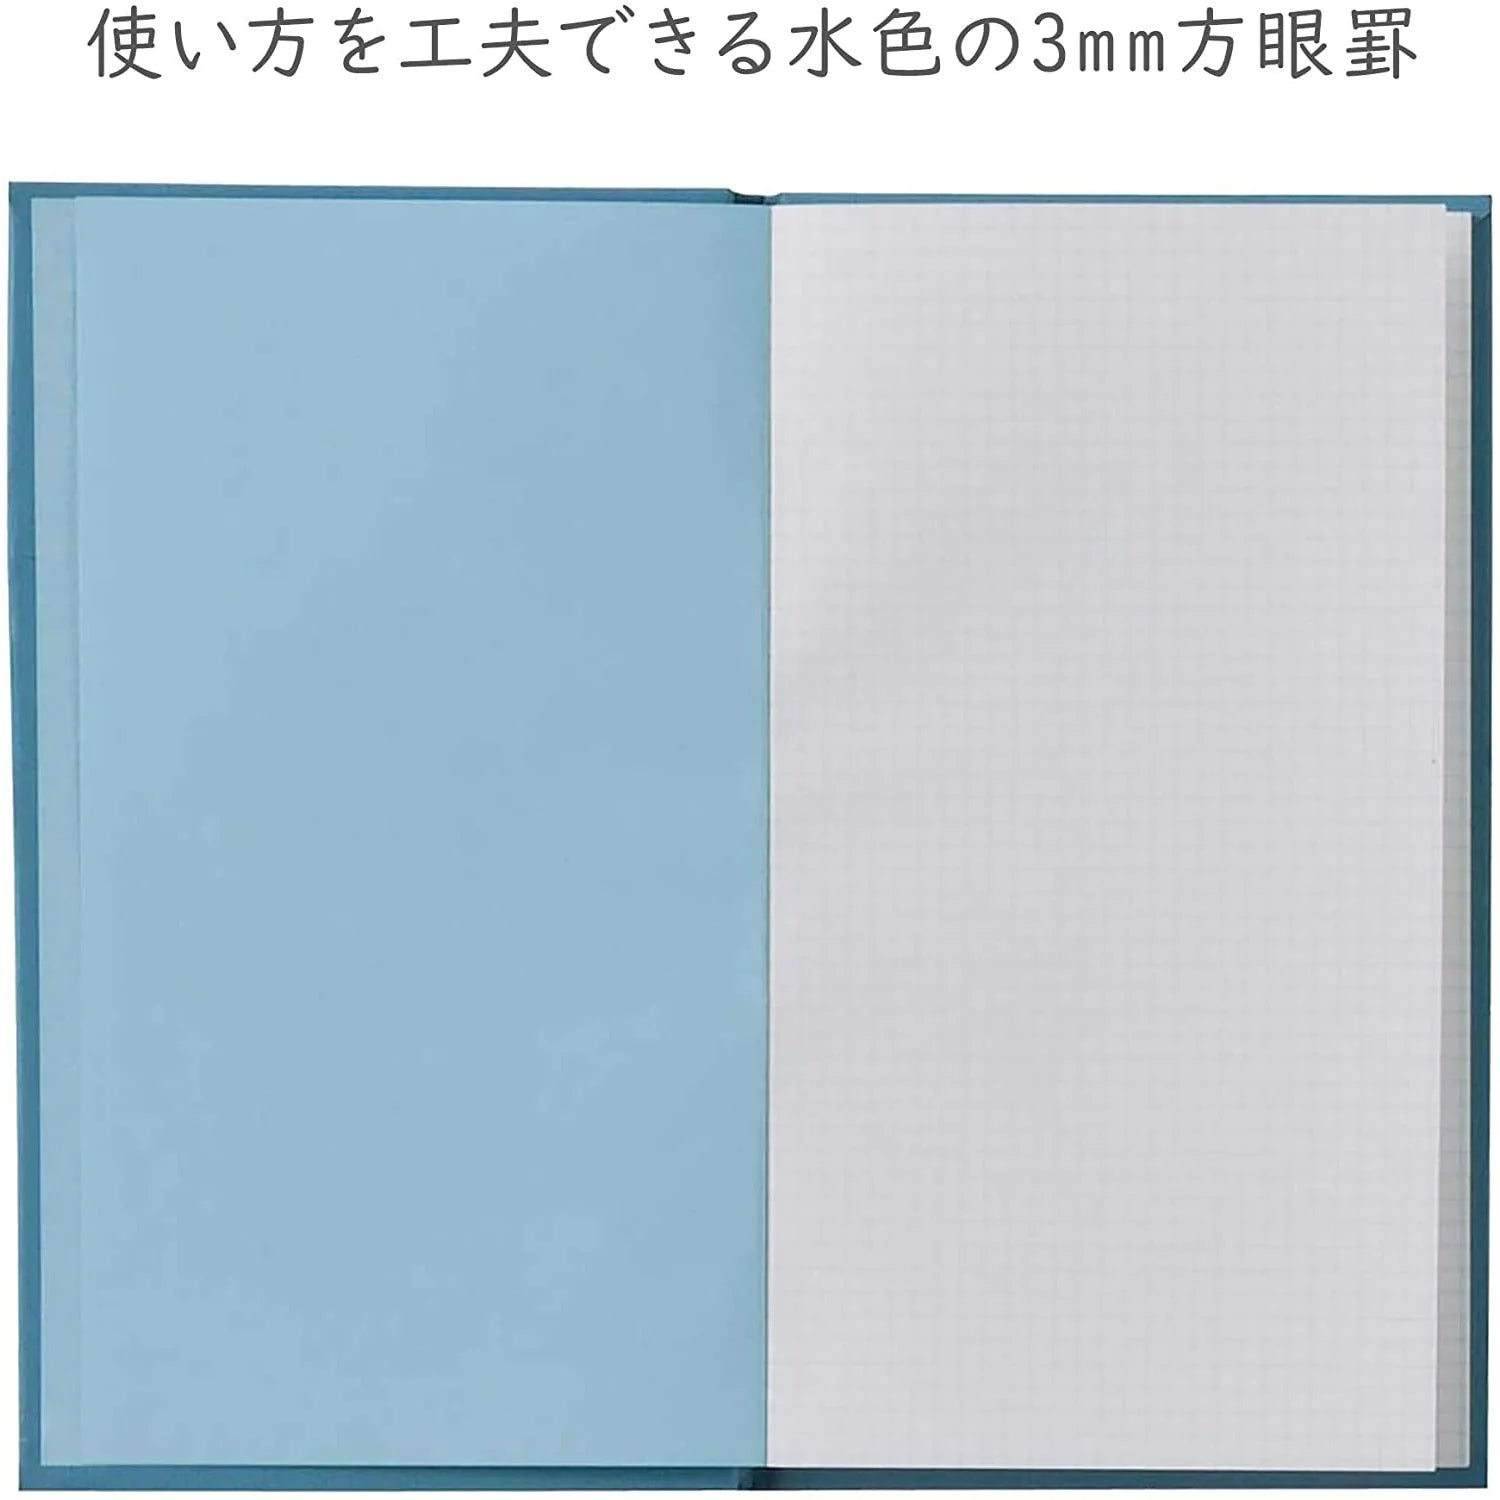 Japanese Pocket Sketchbook / Sulfur